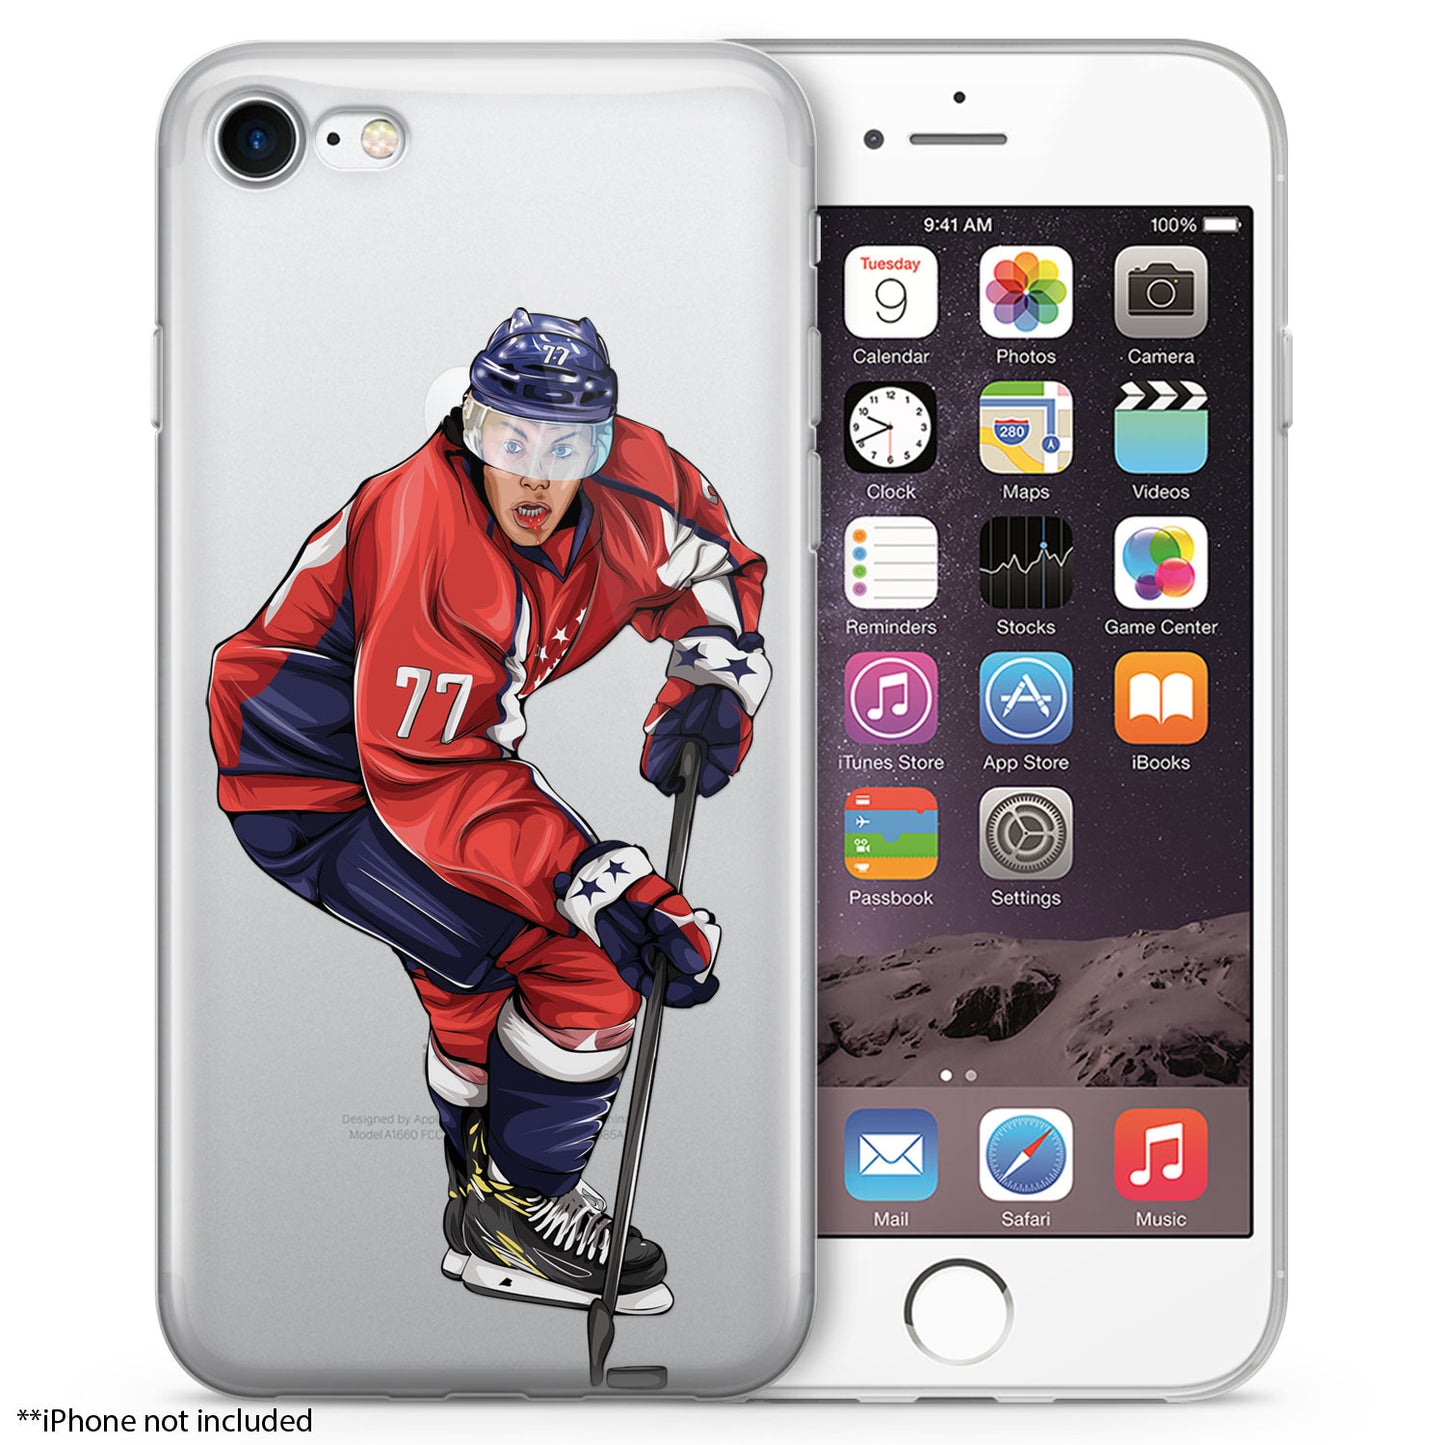 TJ Hockey iPhone Case